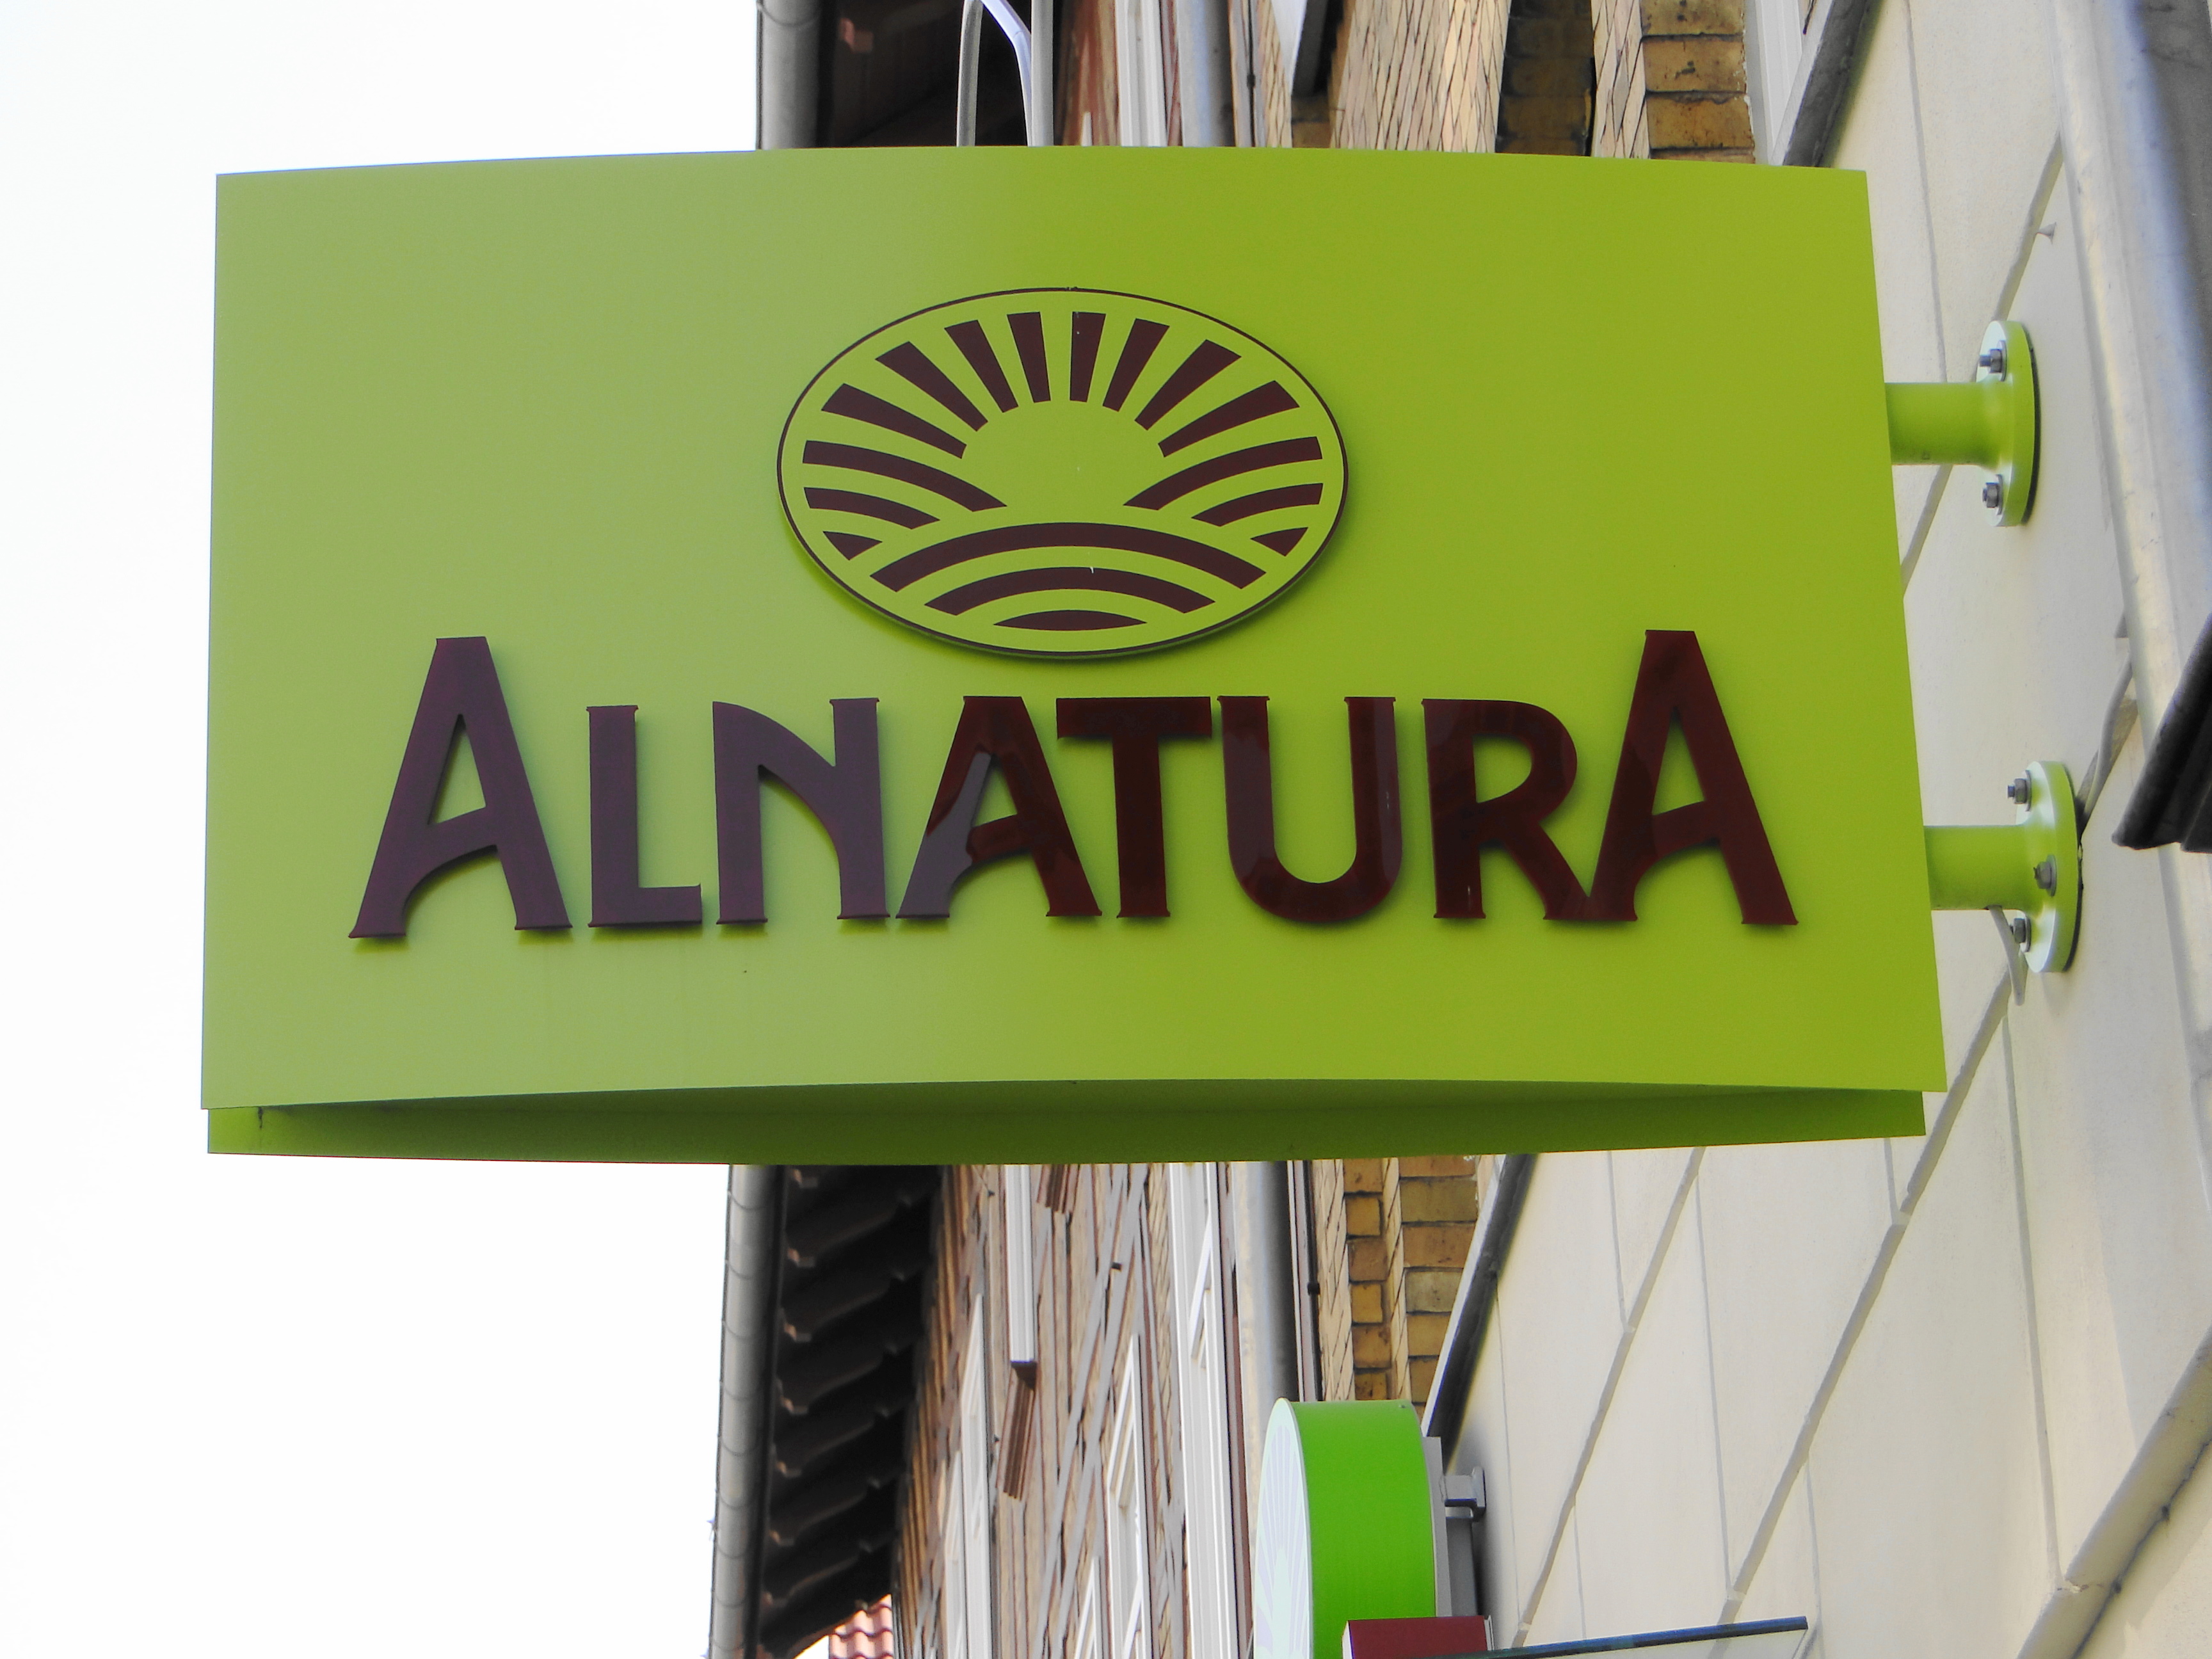 ALNATURA - Bio Supernaturmarkt 27 in der Langen-Geismar-Str. 61